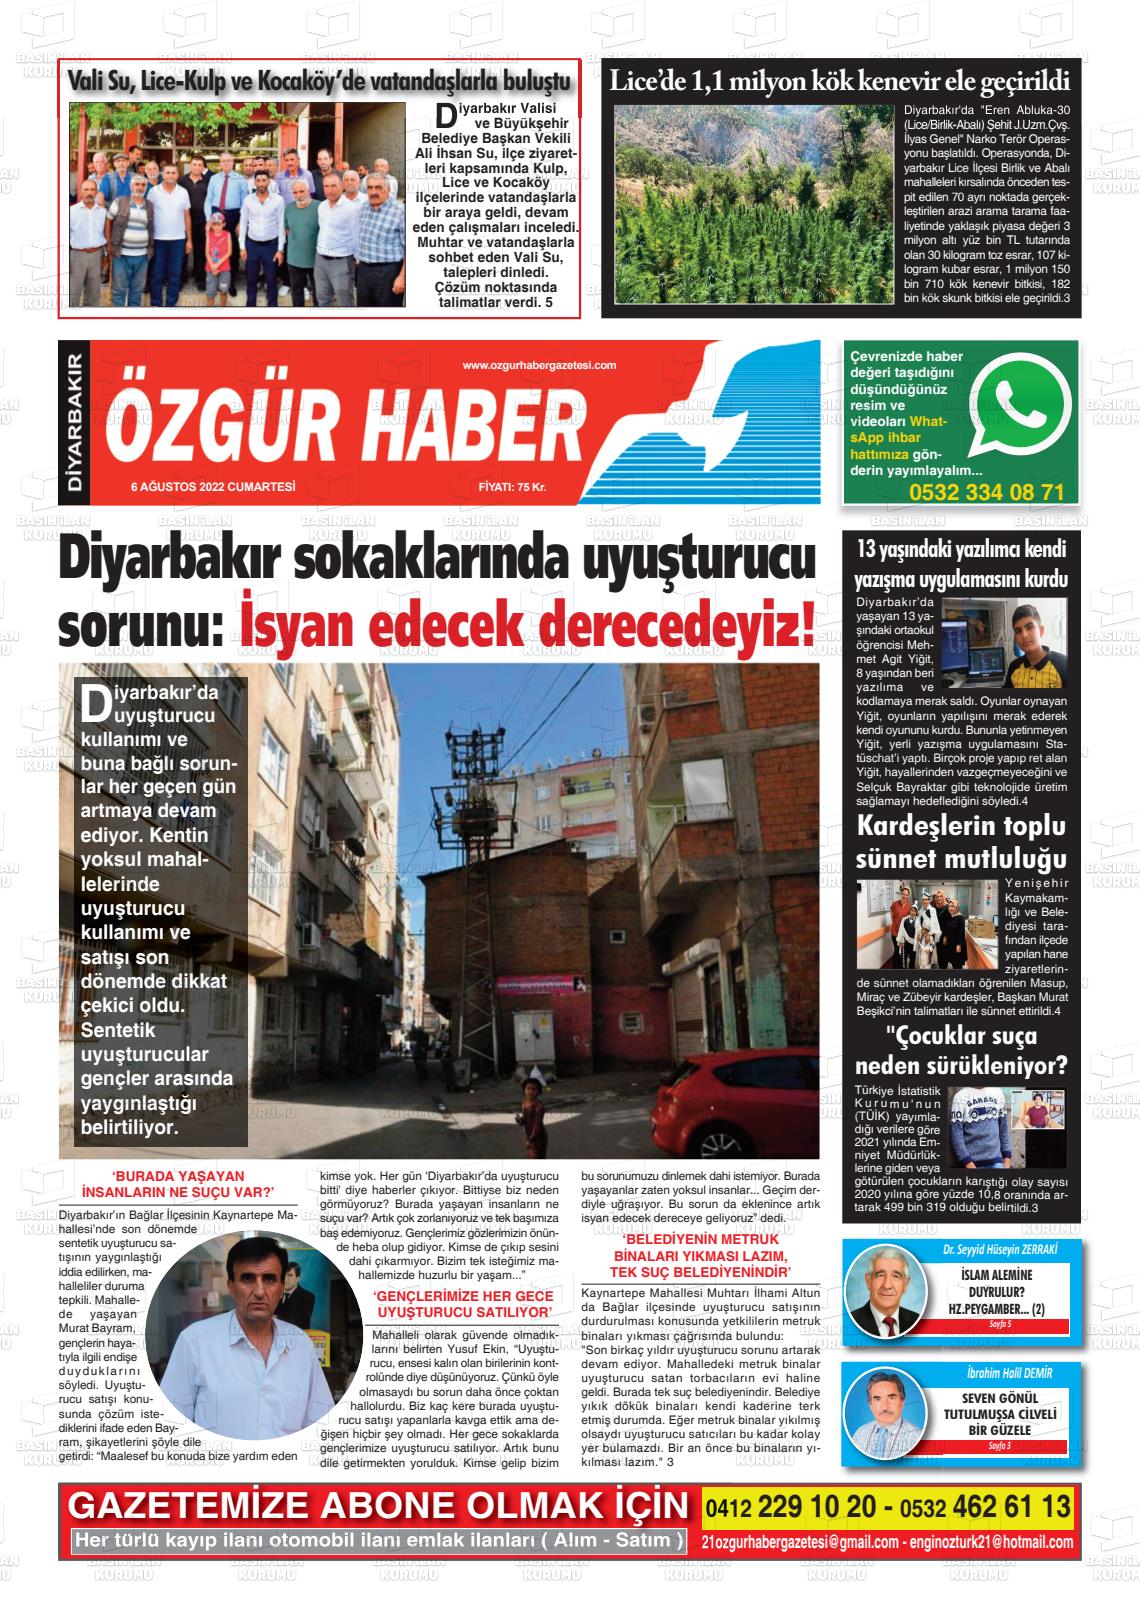 06 Ağustos 2022 Özgür Haber Gazete Manşeti